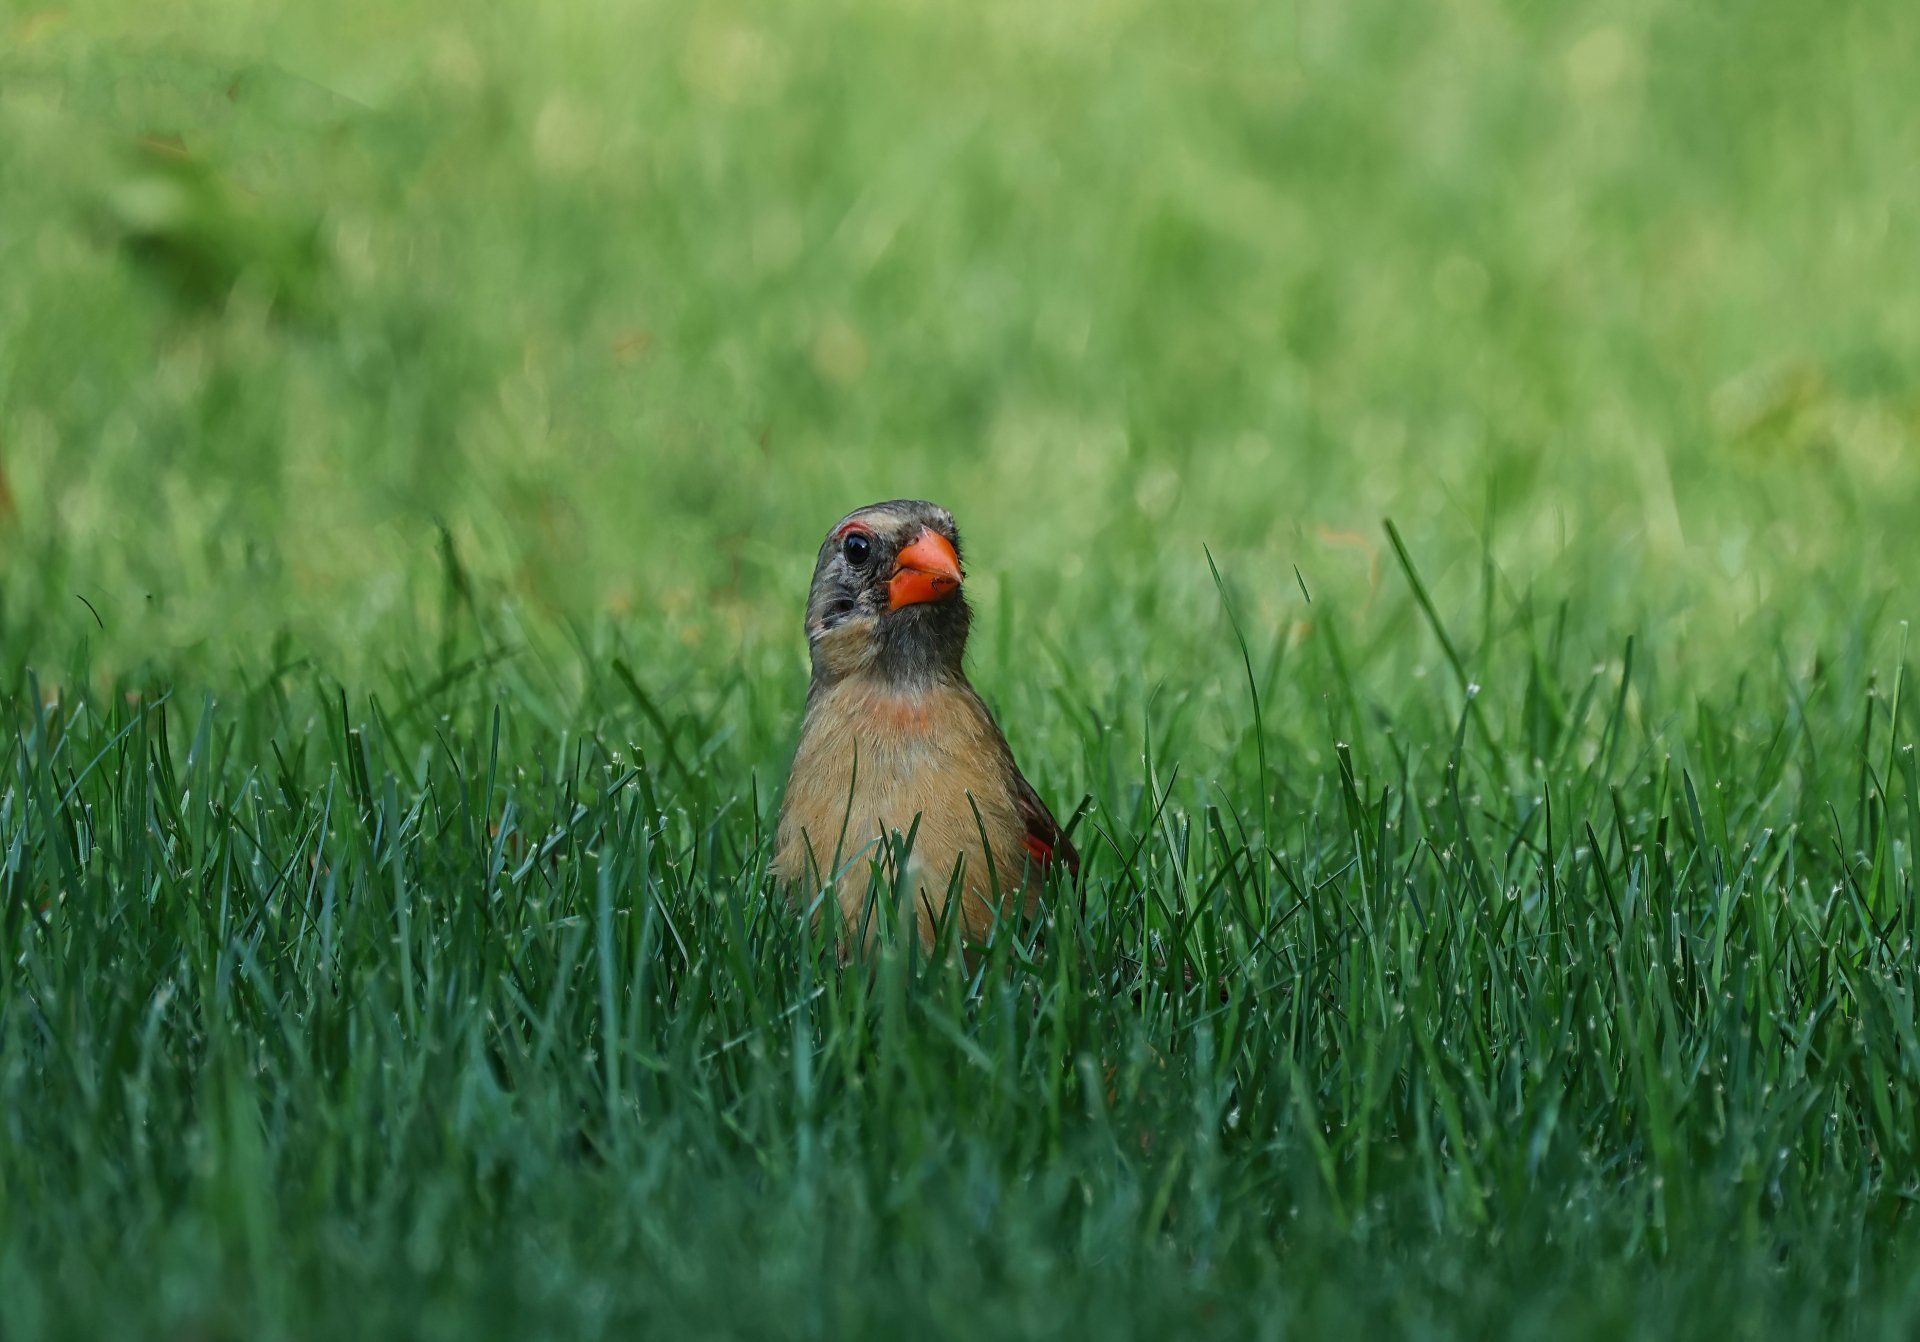 a bird on the grass